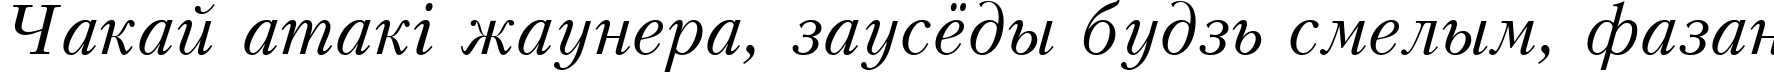 Пример написания шрифтом Kudrashov Italic:001.001 текста на белорусском